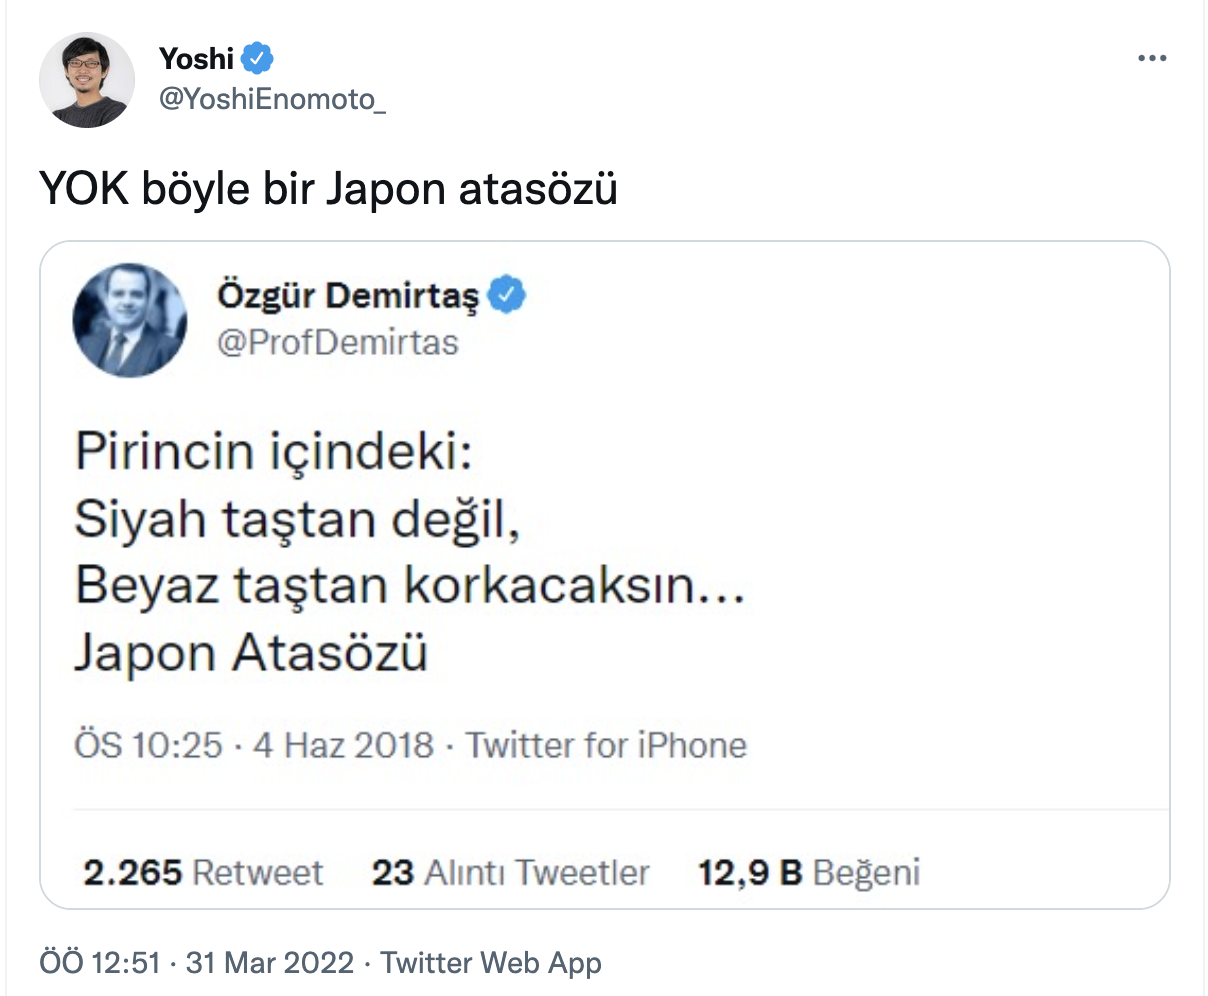 Japon YouTuber, "Böyle bir Japon atasözü yok" dedi, Özgür Demirtaş'tan cevap geldi